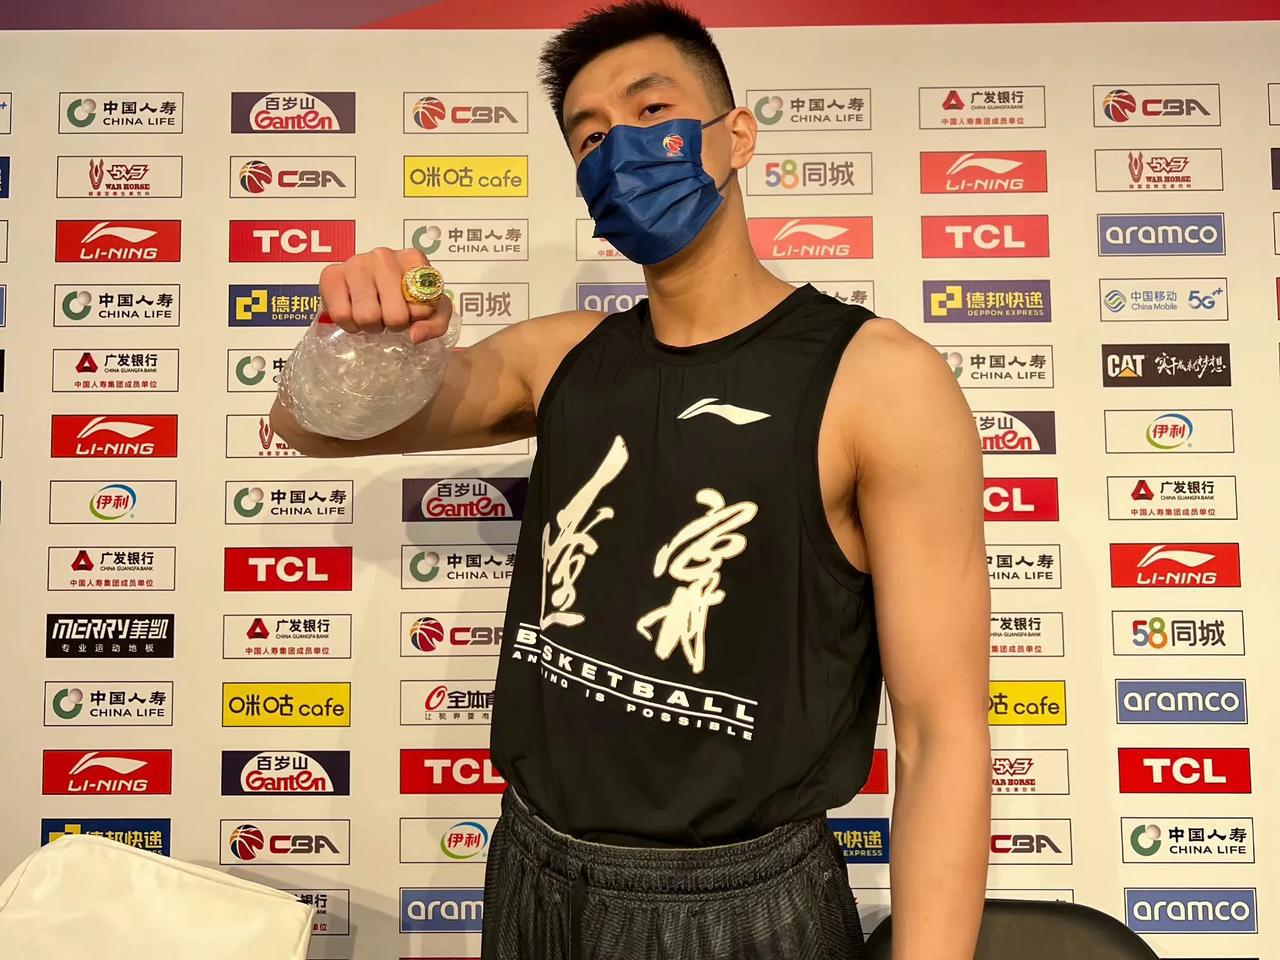 郭艾伦出现发烧和咳嗽的情况，他可能会缺席与上海男篮的比赛！

郭艾伦本人在北京时(2)